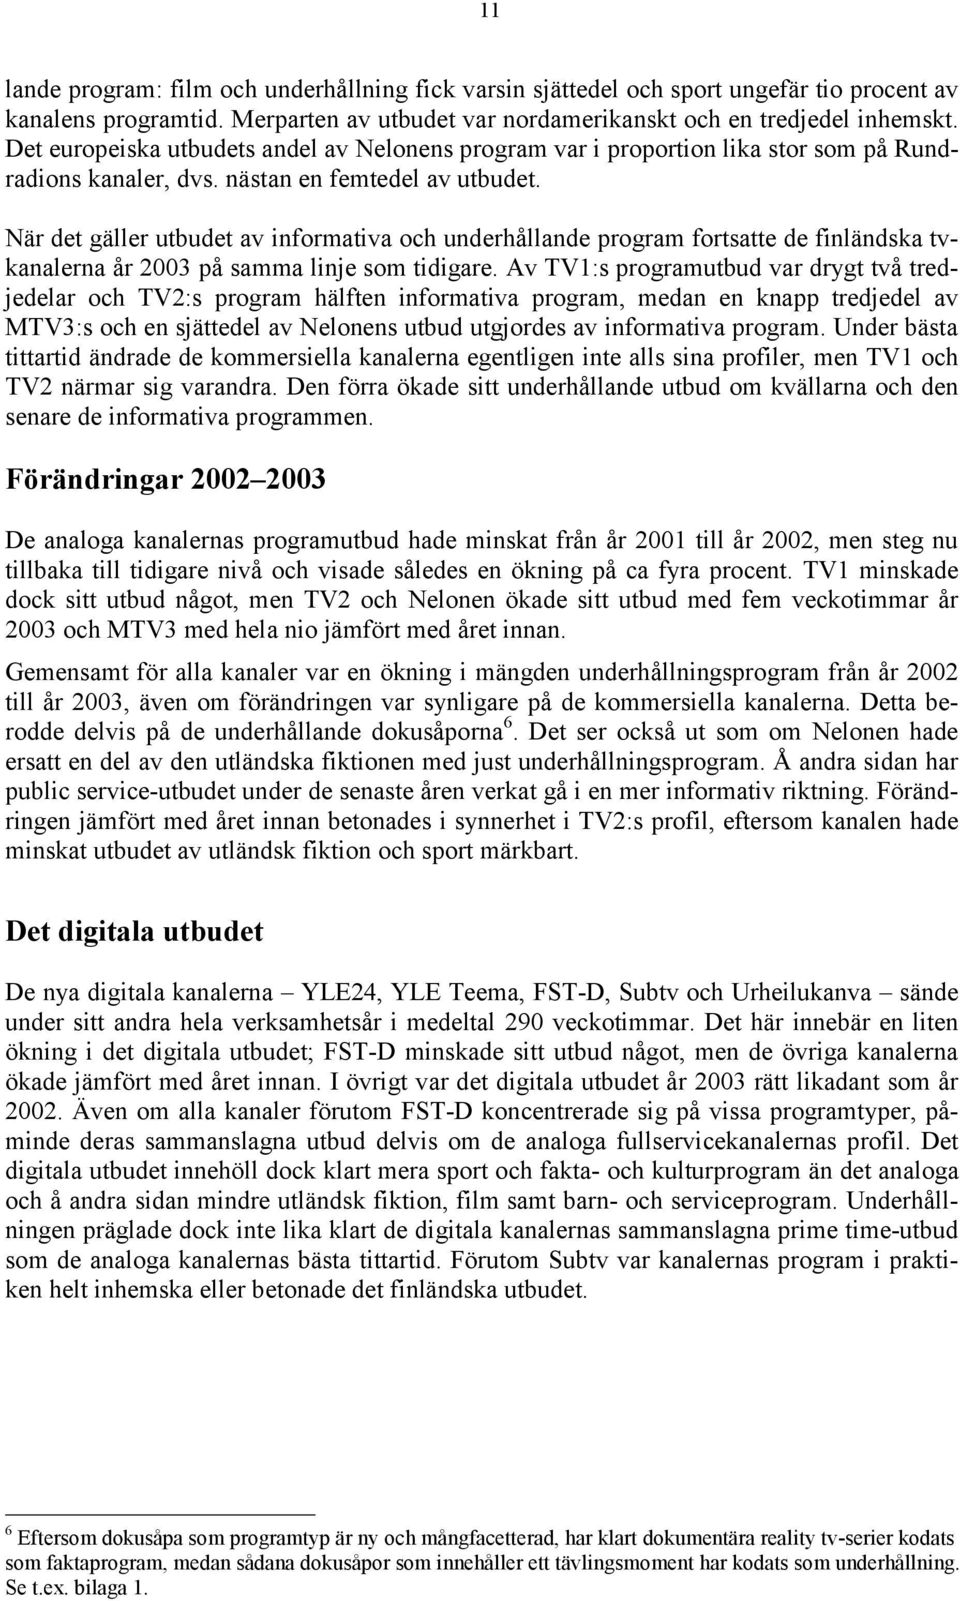 När det gäller utbudet av informativa och underhållande program fortsatte de finländska tvkanalerna år 2003 på samma linje som tidigare.